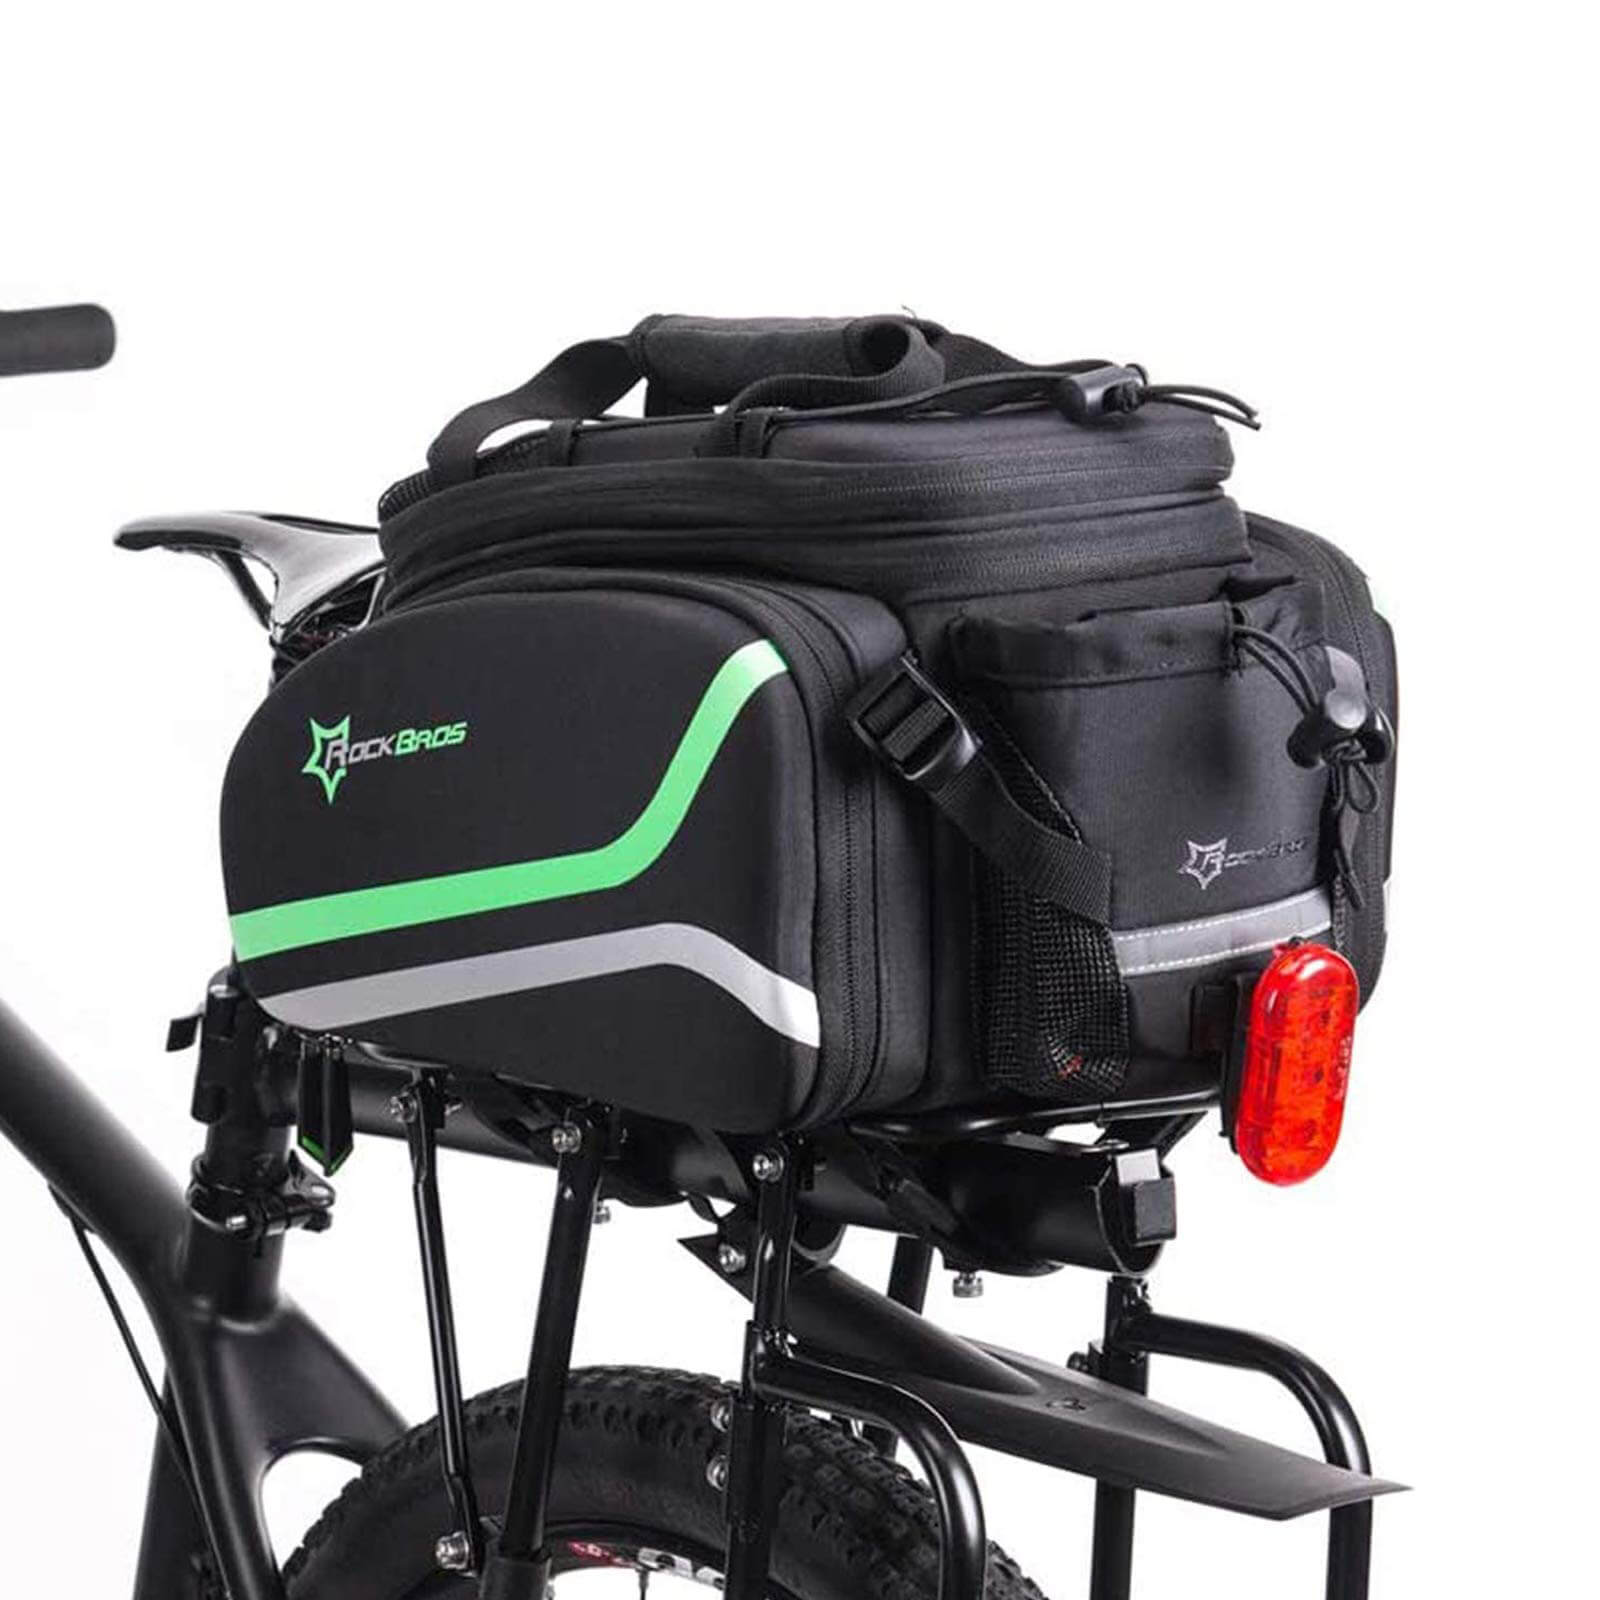 ROCKBROS Bike Rear Rack Pannier Waterproof Bag Bike Trunk Pack #Color_Black Green